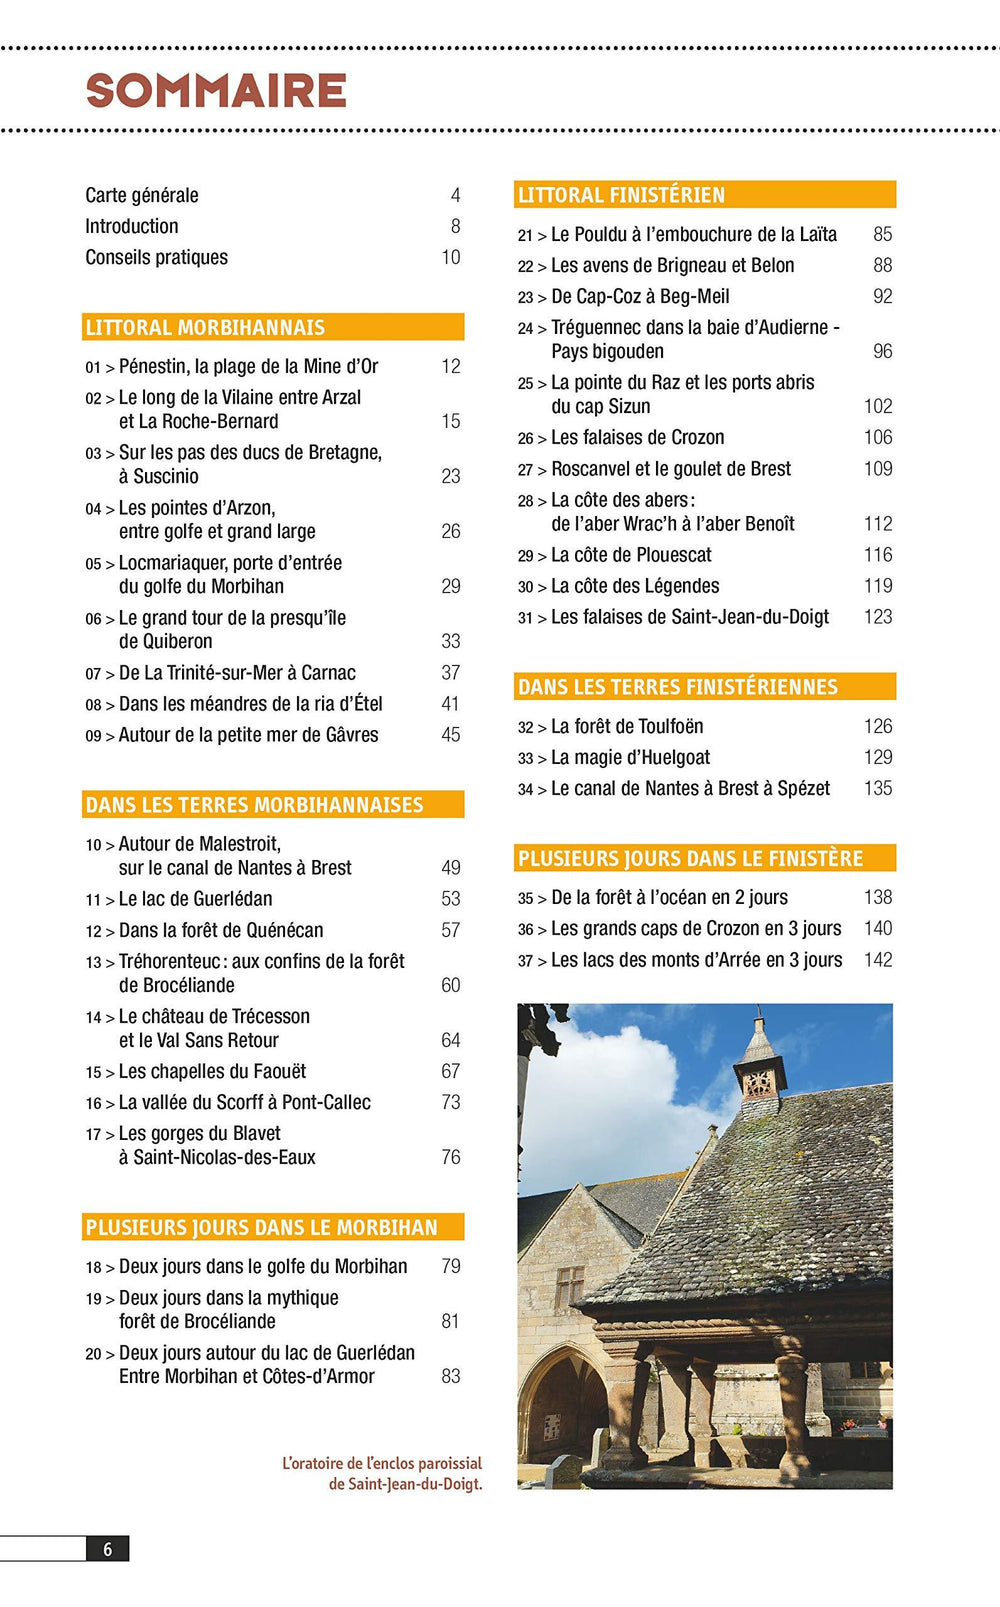 Guide - Bretagne, vol. 1 : Finistère & Morbihan, les plus belles randonnées | Glénat guide de randonnée Glénat 